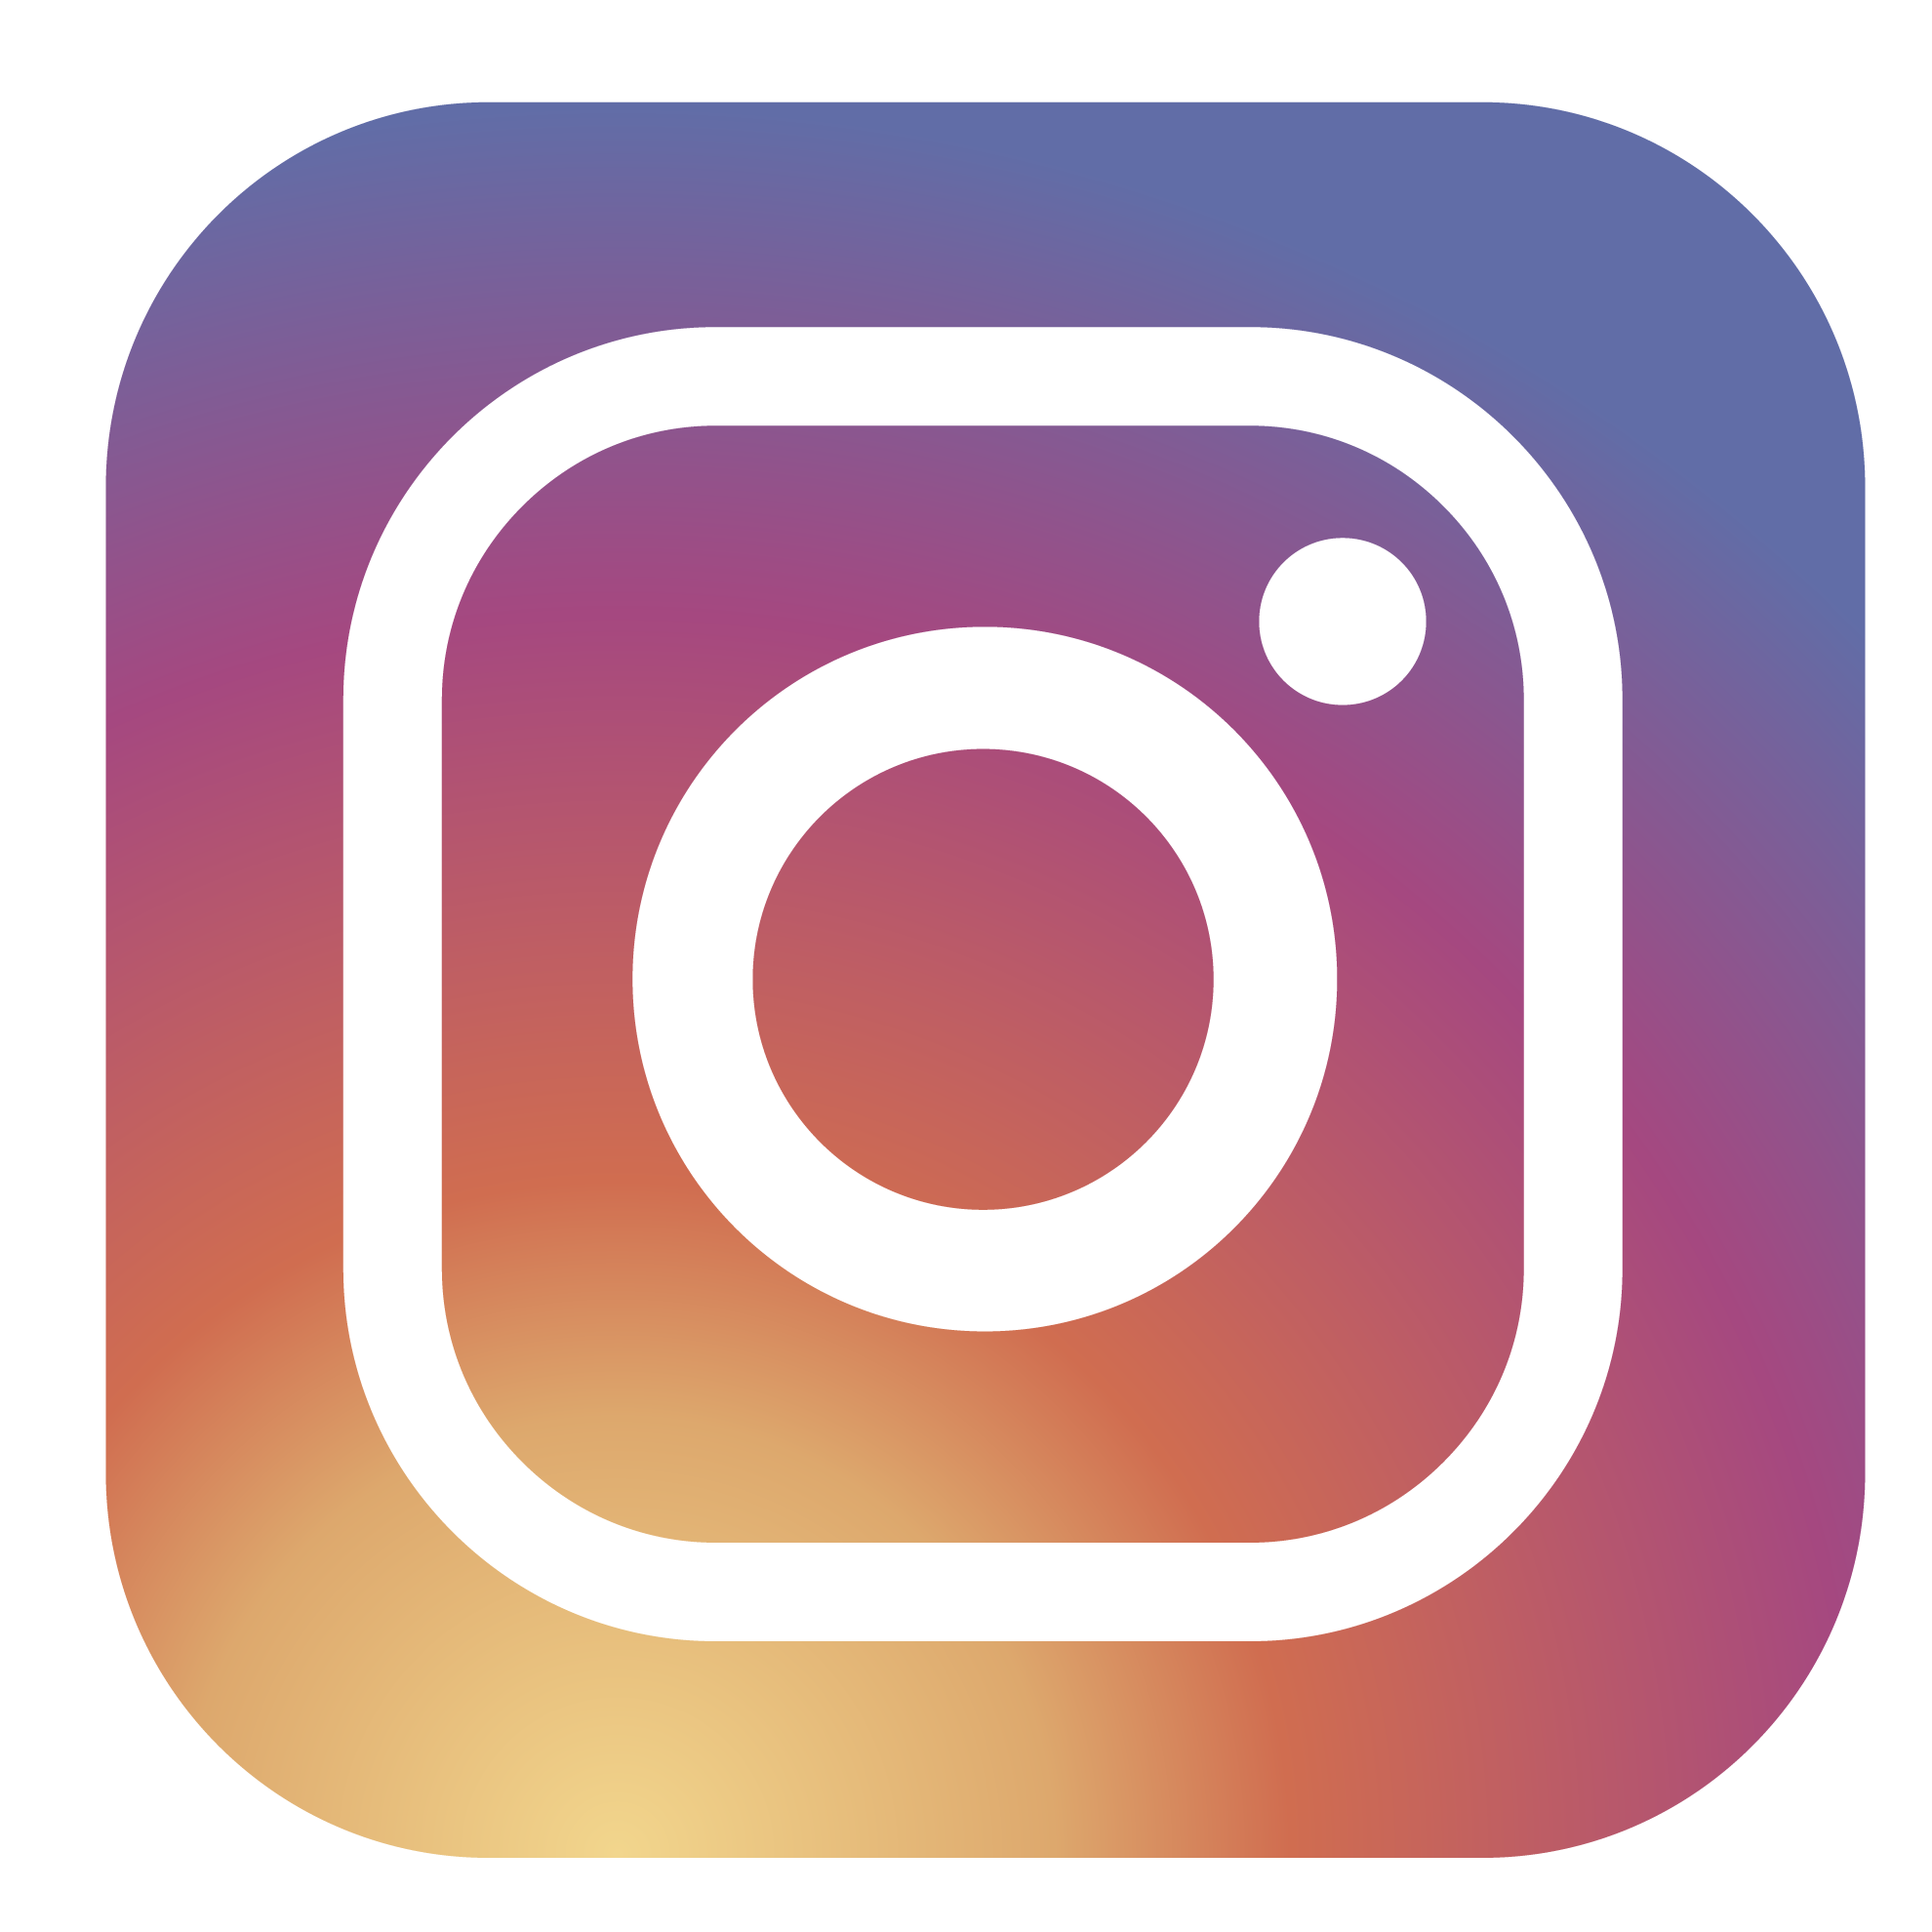 Logotipo Instagram con tu recarga móvil Movistar ilimitado prepago